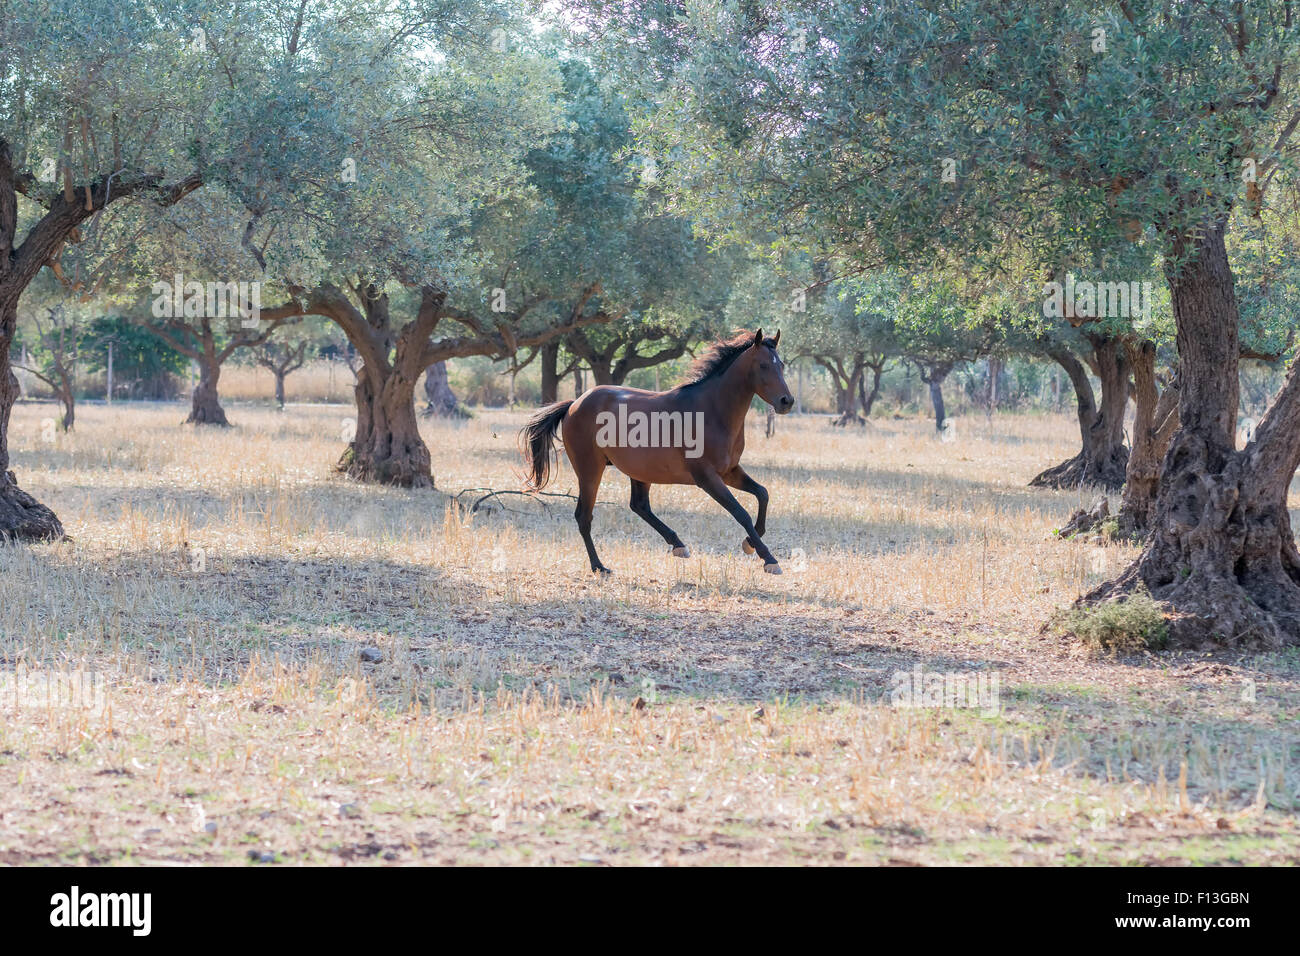 Wild horse running free. Stock Photo